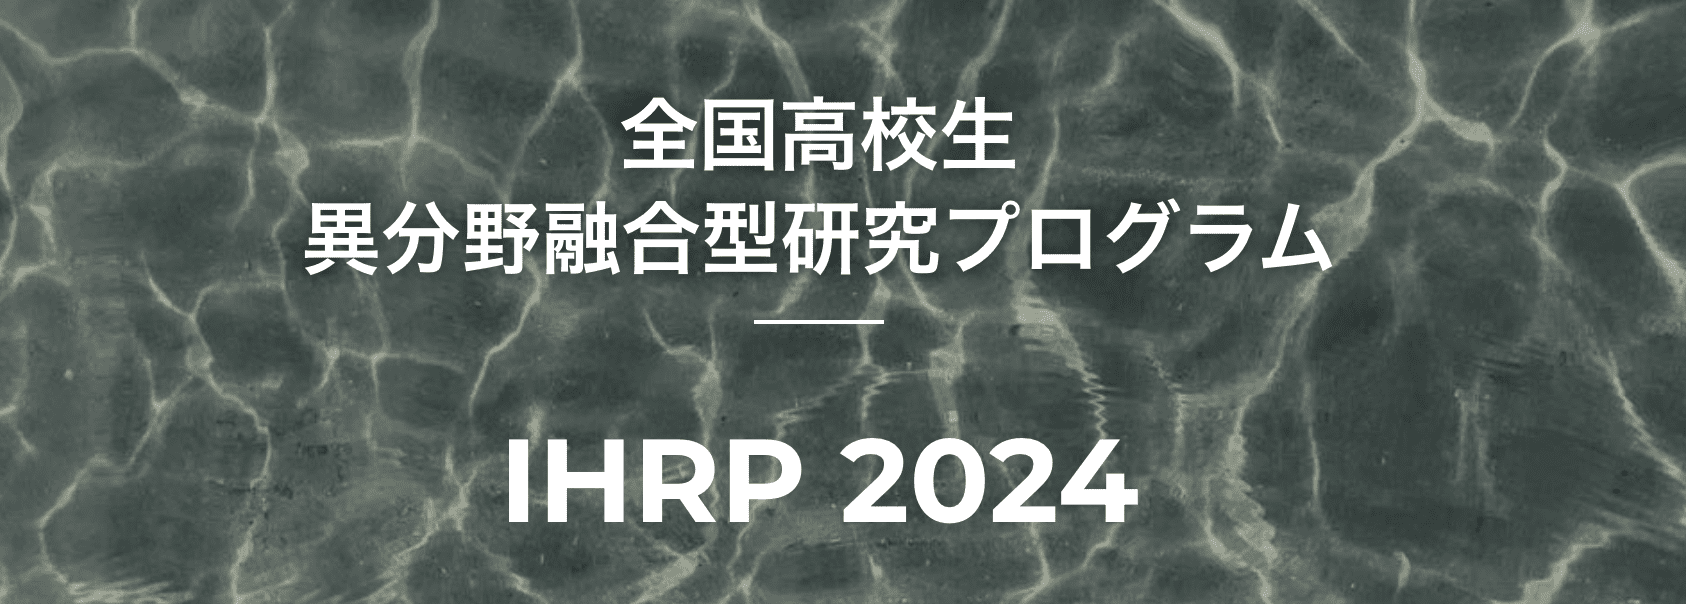 全国高校生異分野融合型研究プログラム「IHRP 2024」